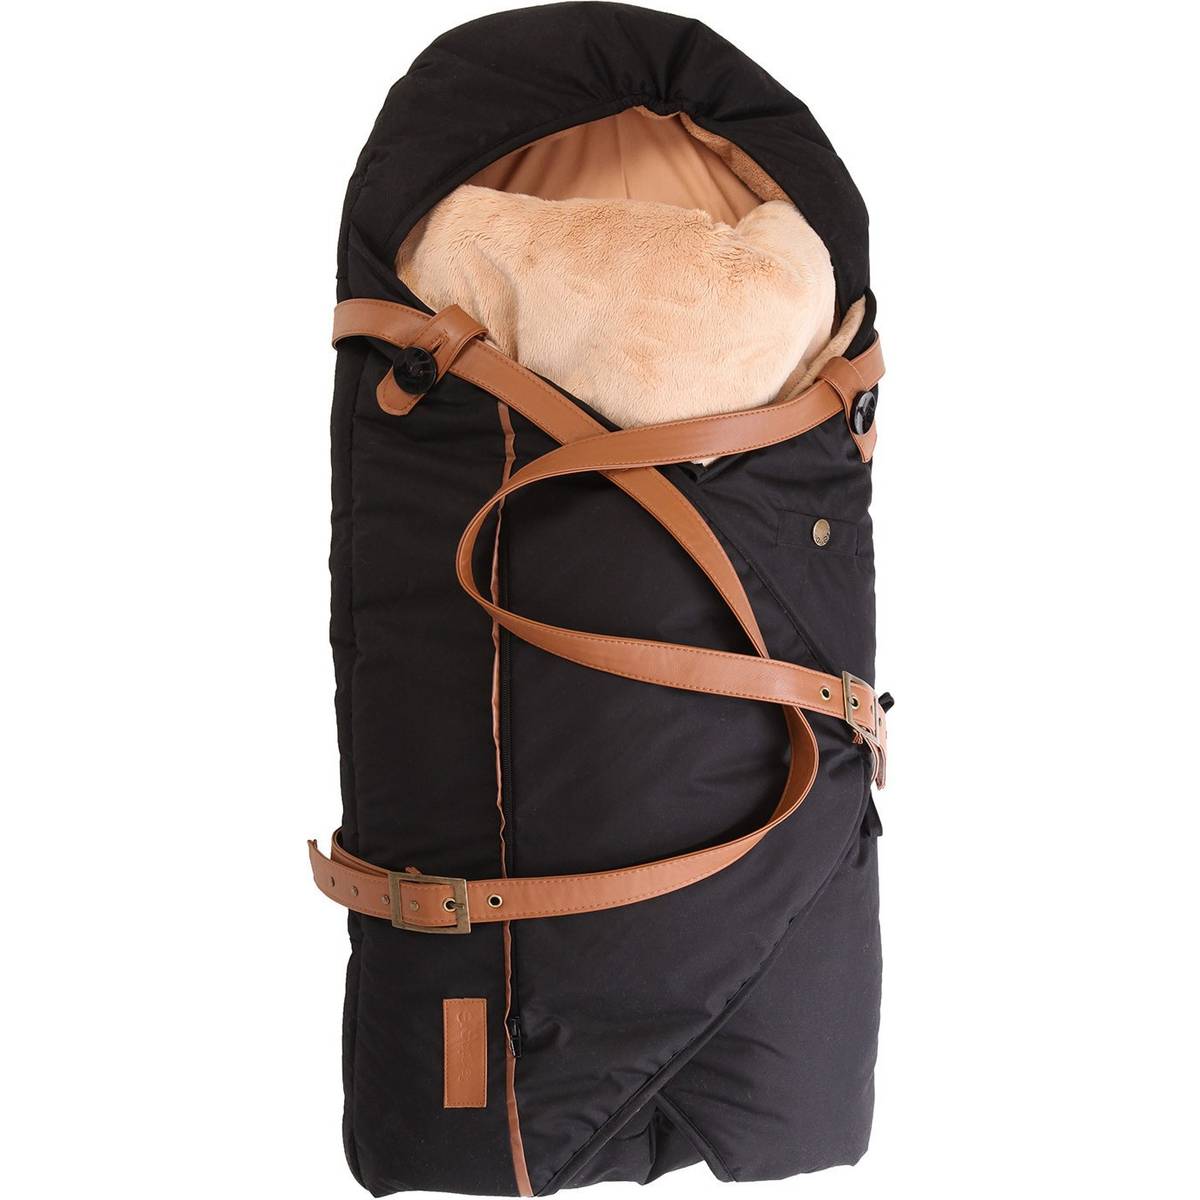 Sleepbag Kørepose (4 produkter) hos PriceRunner • Se priser nu »